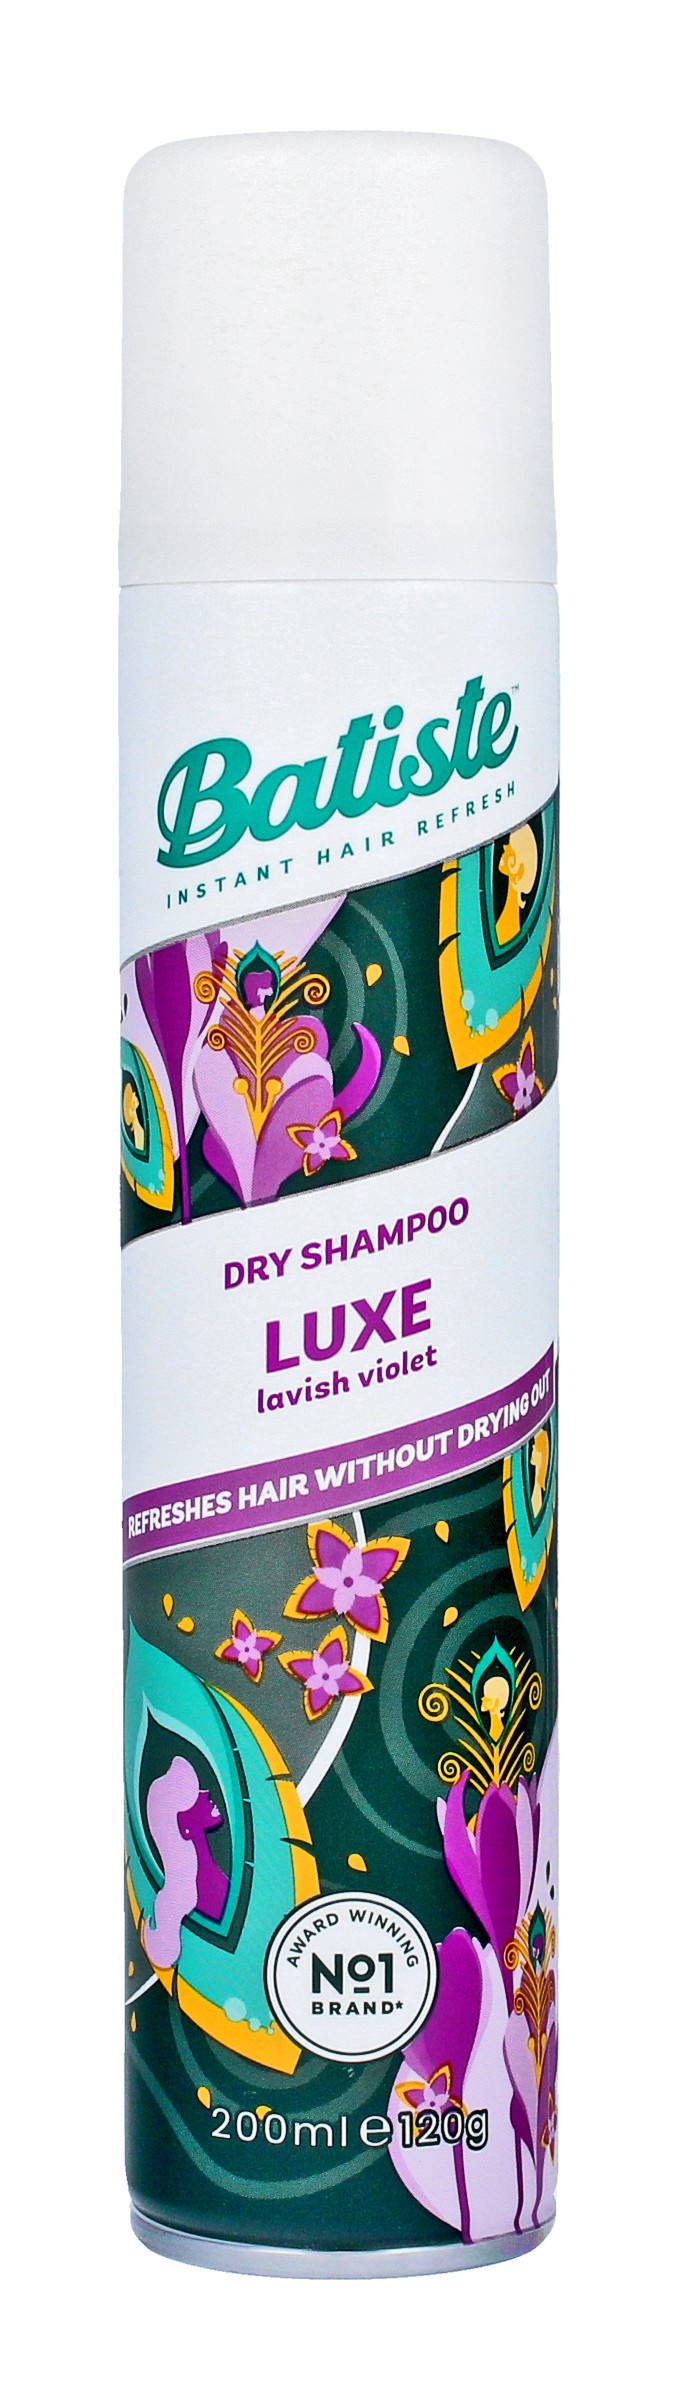 batiste dry shampoo luxe suchy szampon do włosów